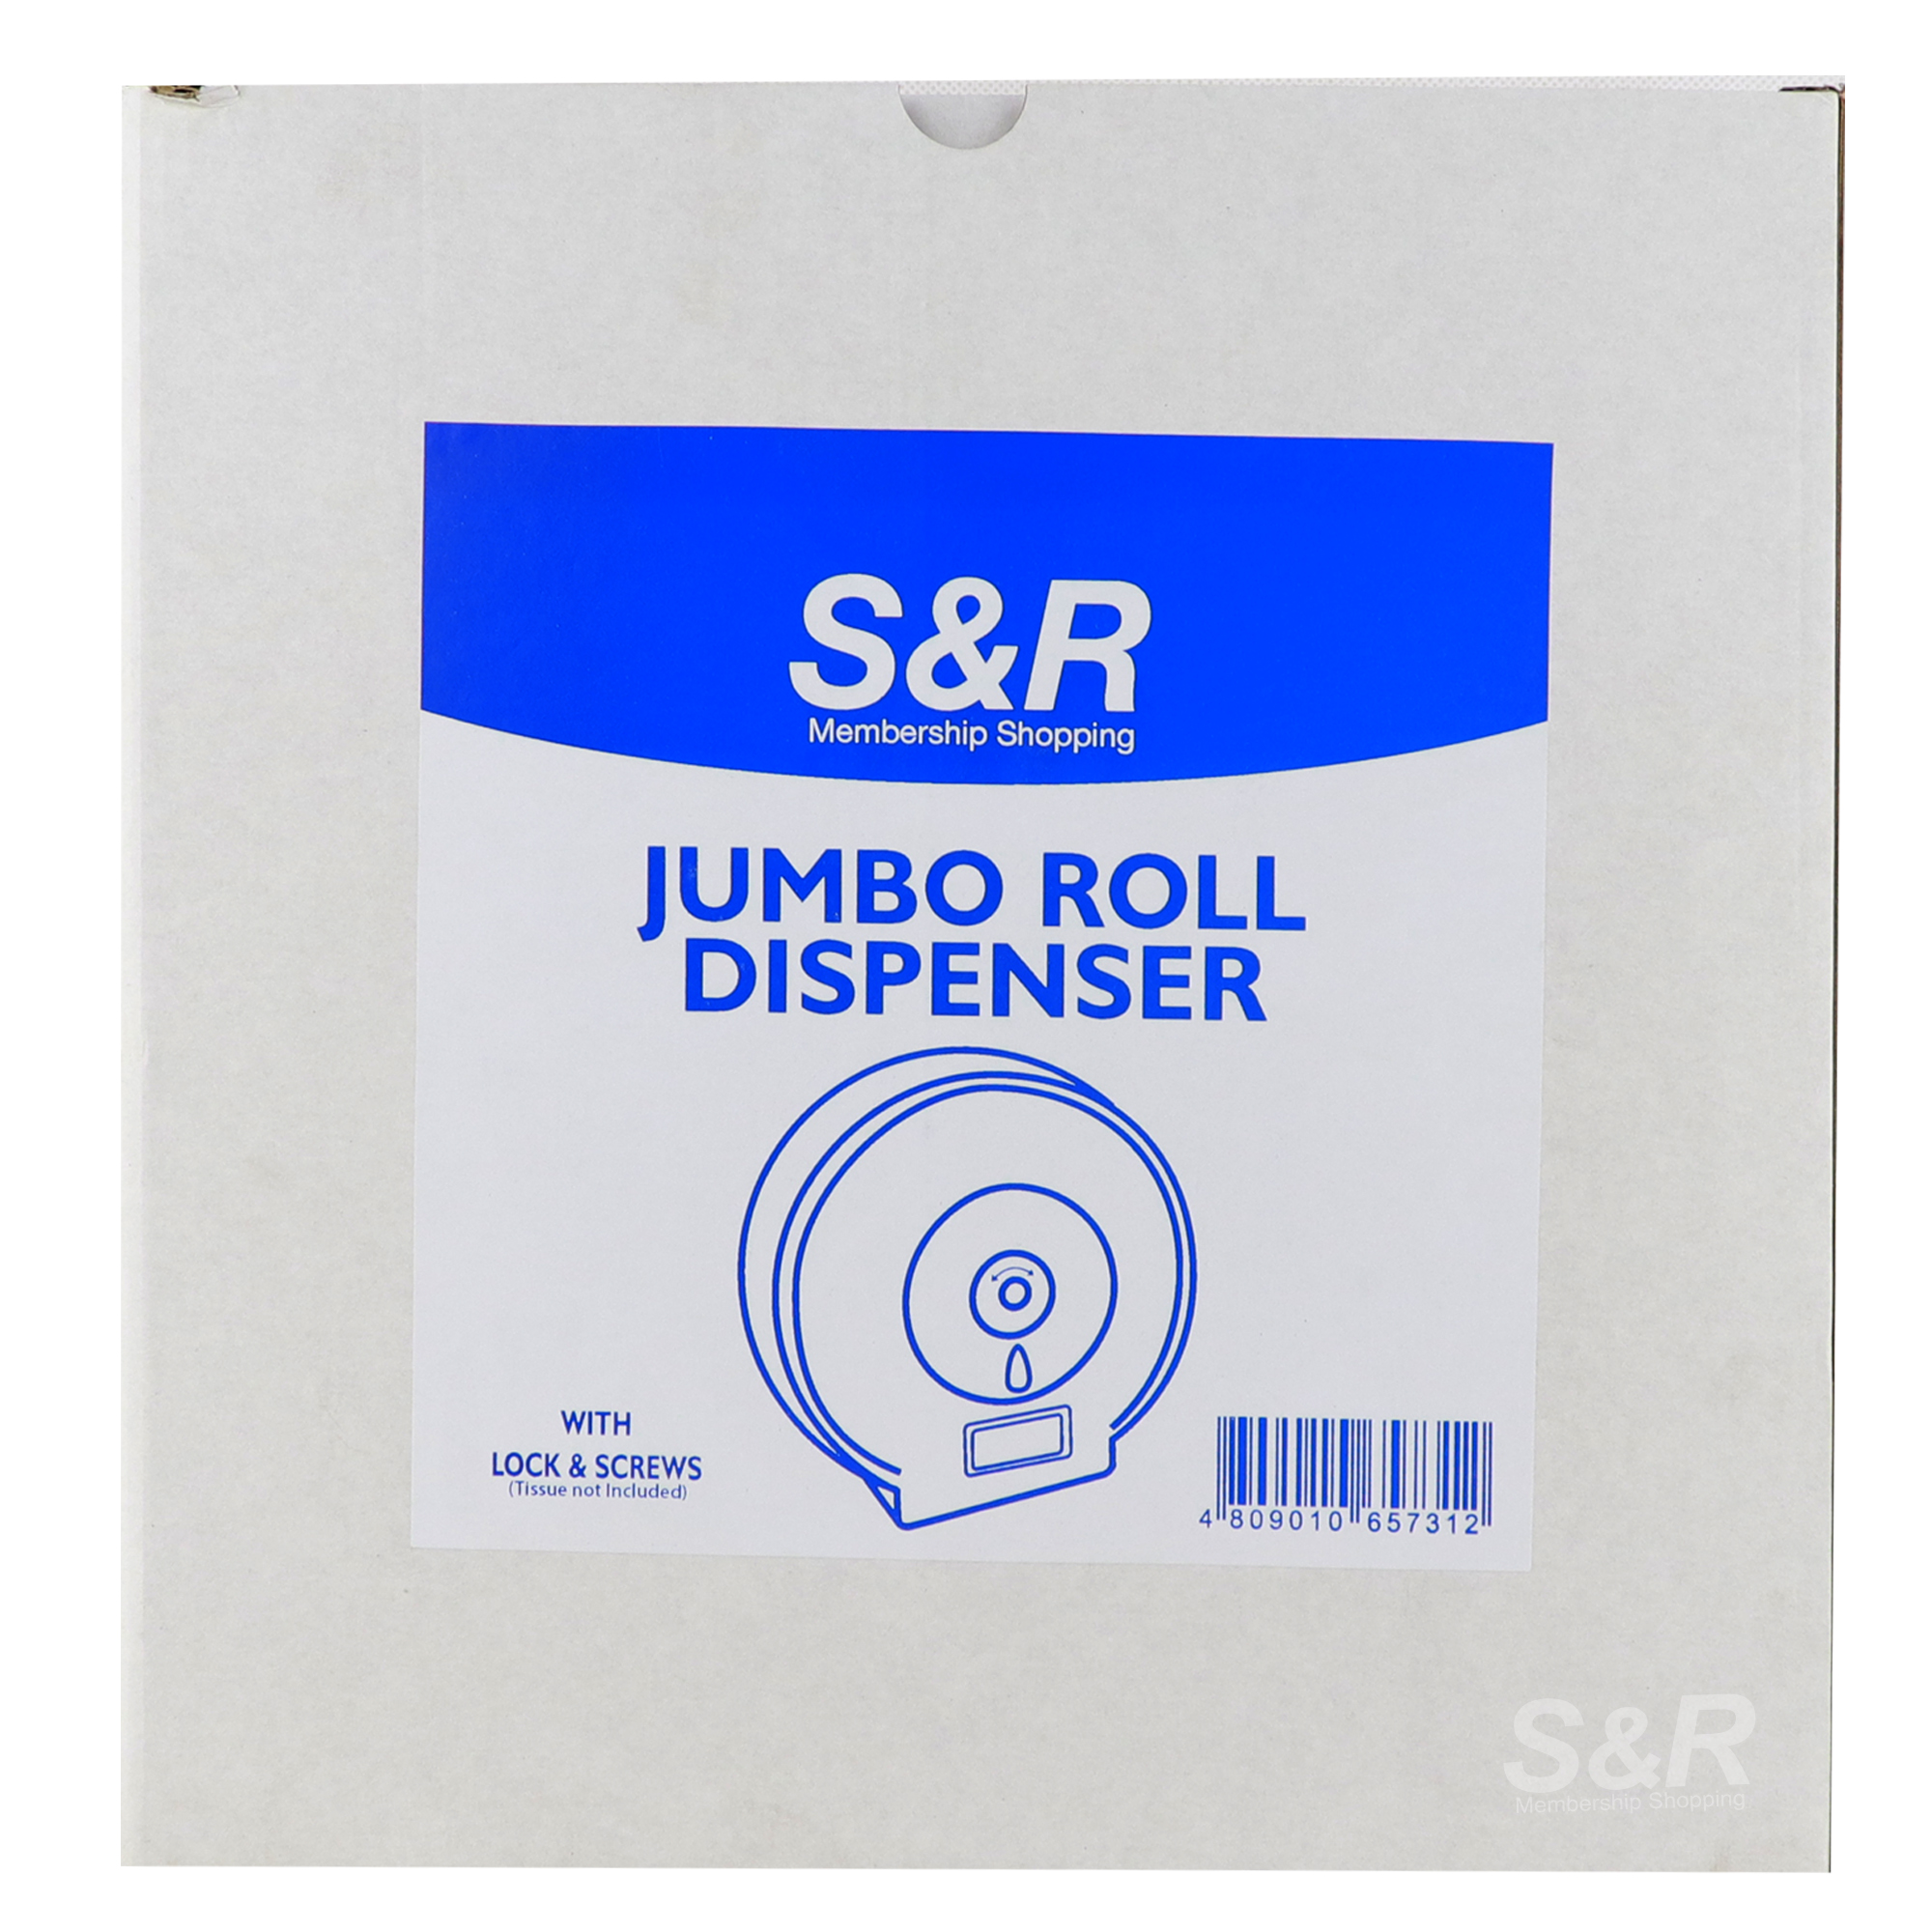 S&R Jumbo Roll Dispenser 1 set